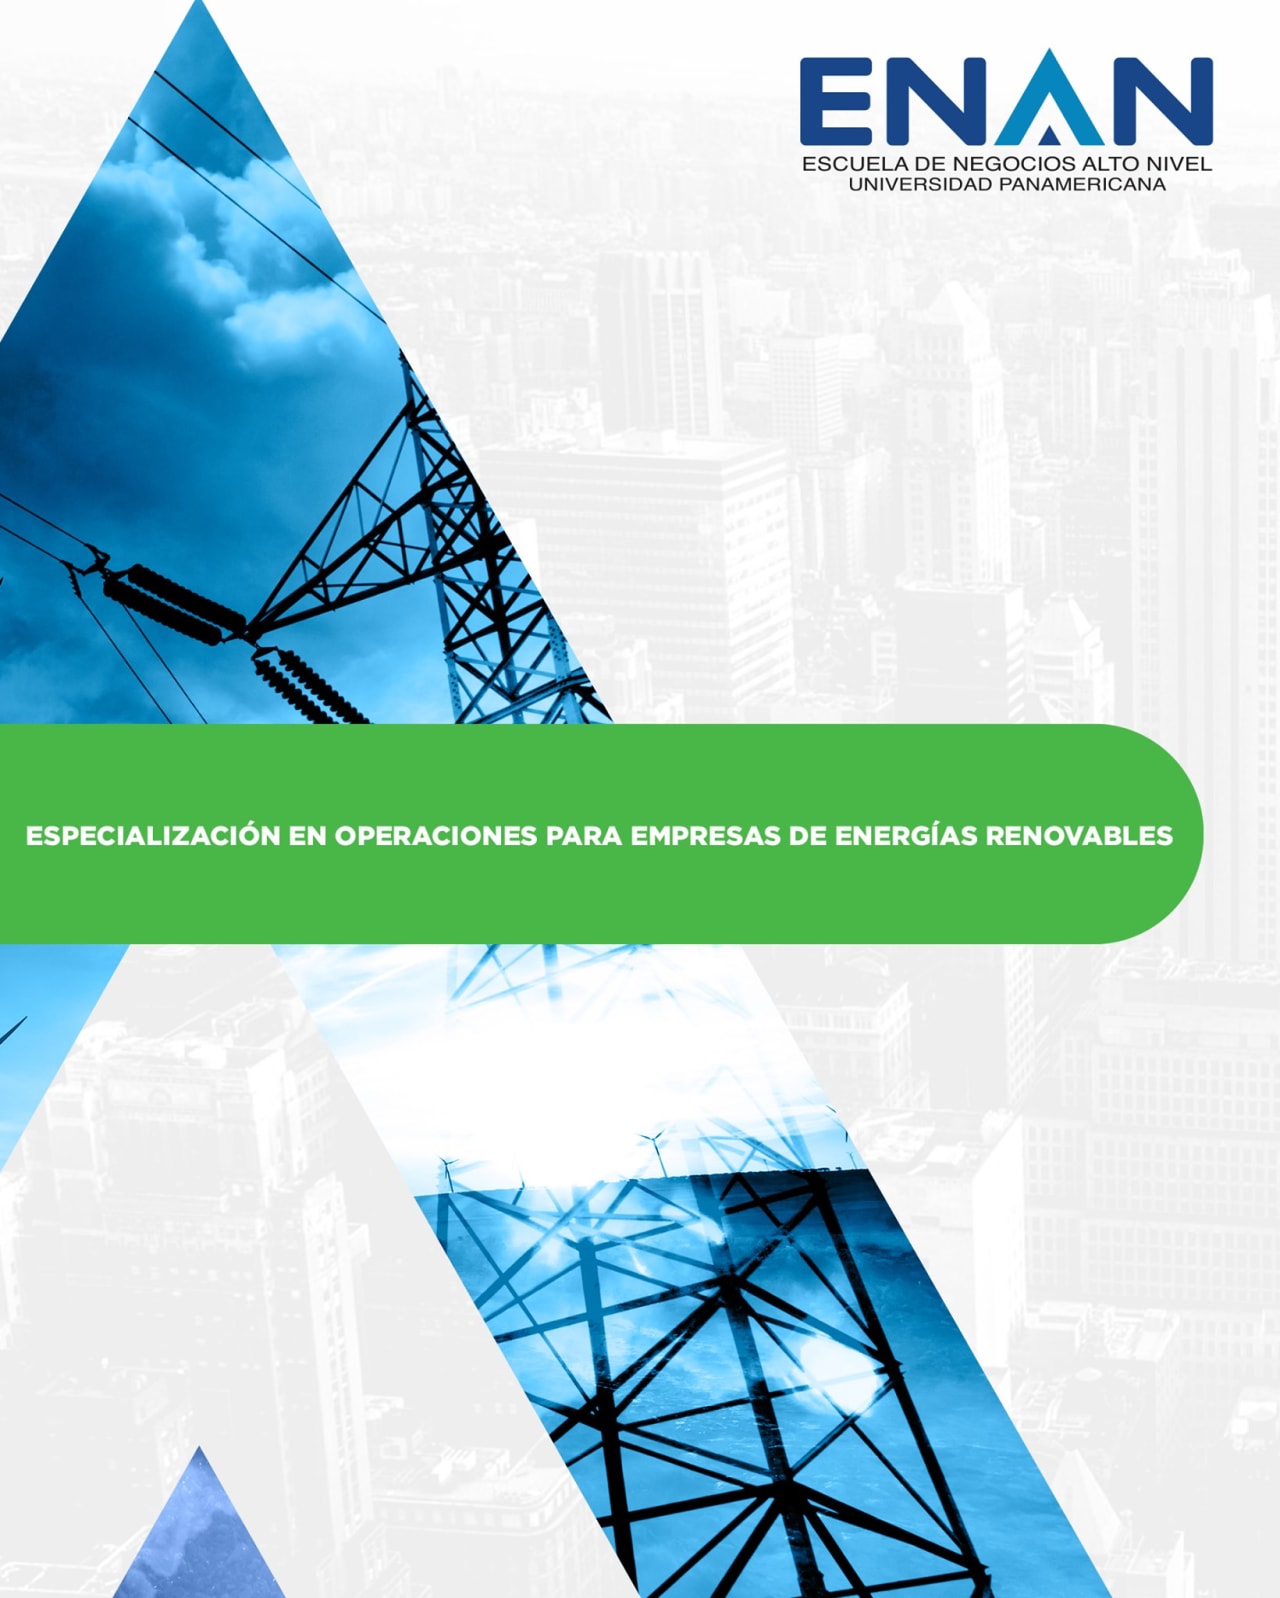 Escuela de Negocios Alto Nivel - Universidad Panamericana de Guatemala Chuyên môn hóa hoạt động cho các công ty năng lượng tái tạo